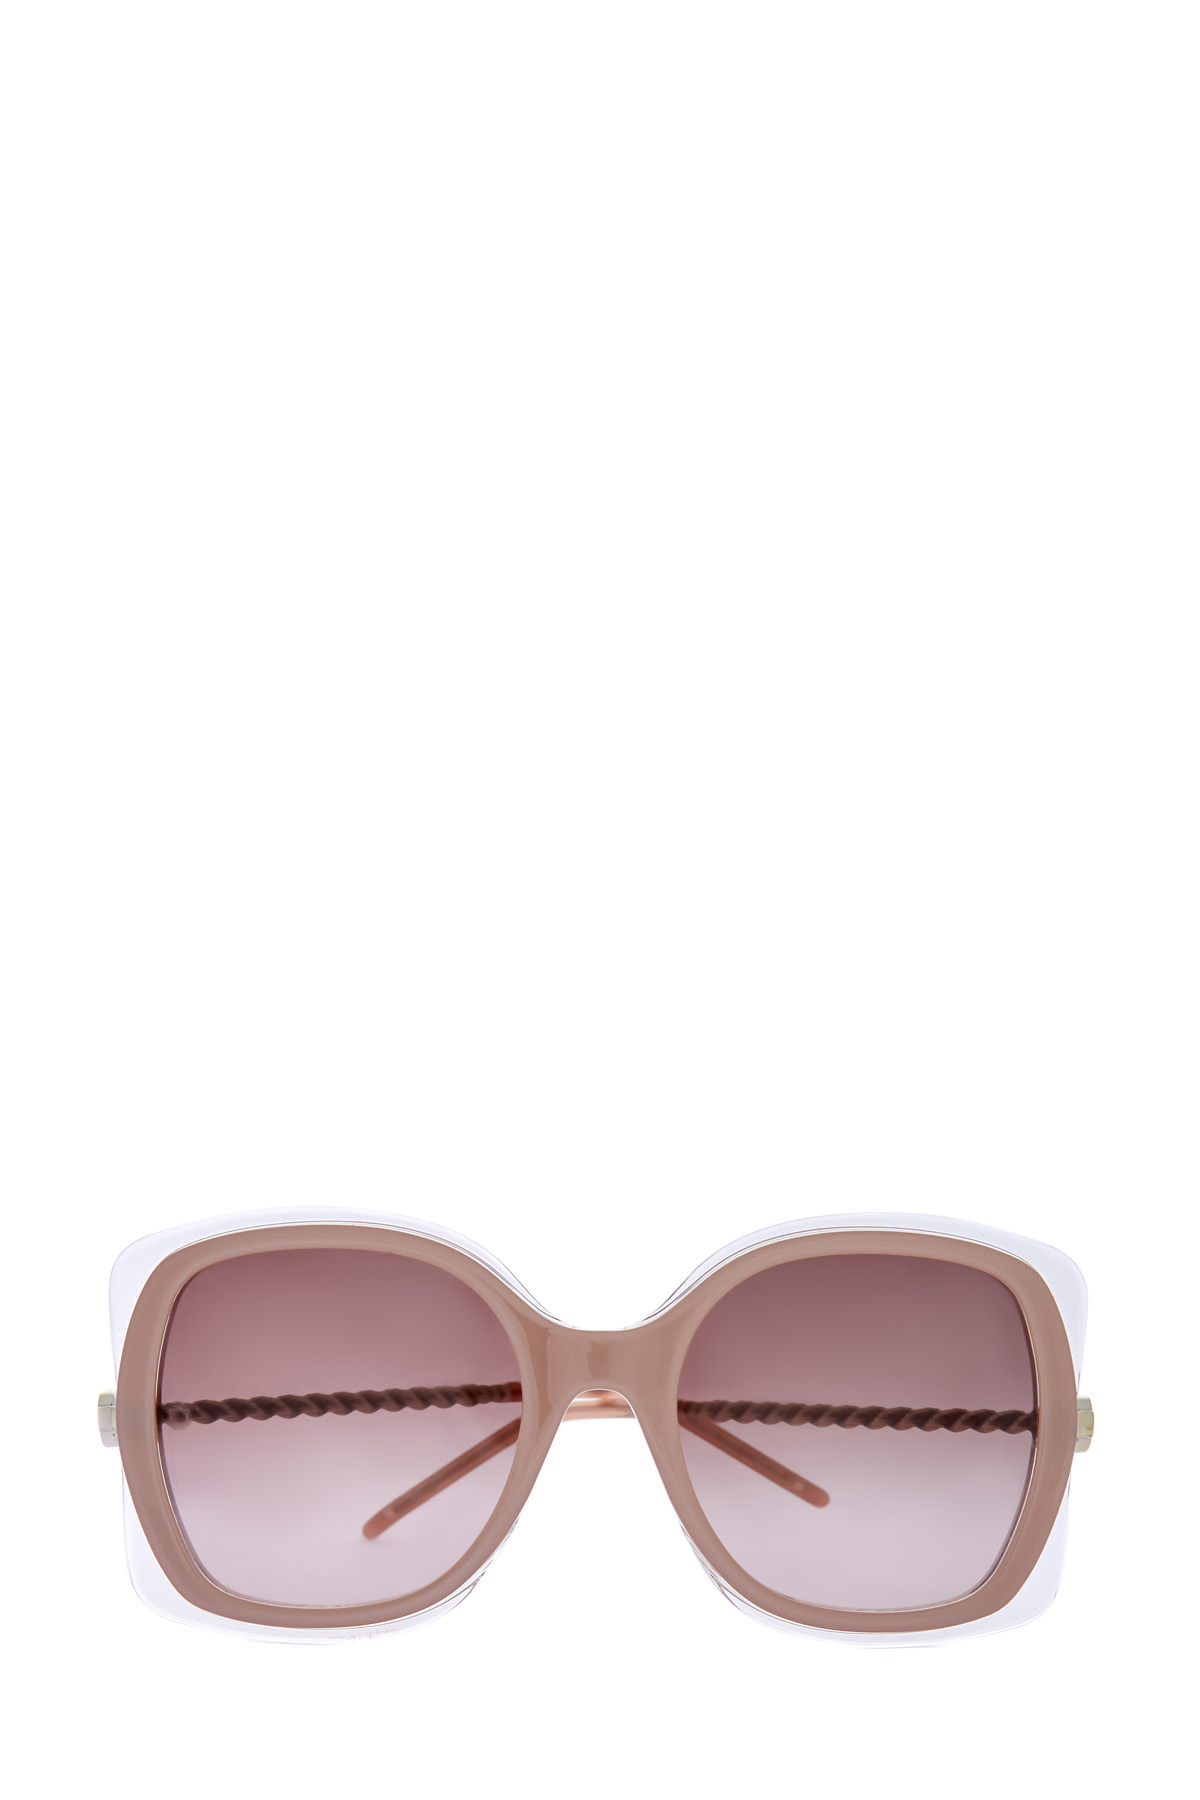 Солнцезащитные очки с полупрозрачными контурами и витыми дужками ELIE SAAB, размер 40 - фото 1